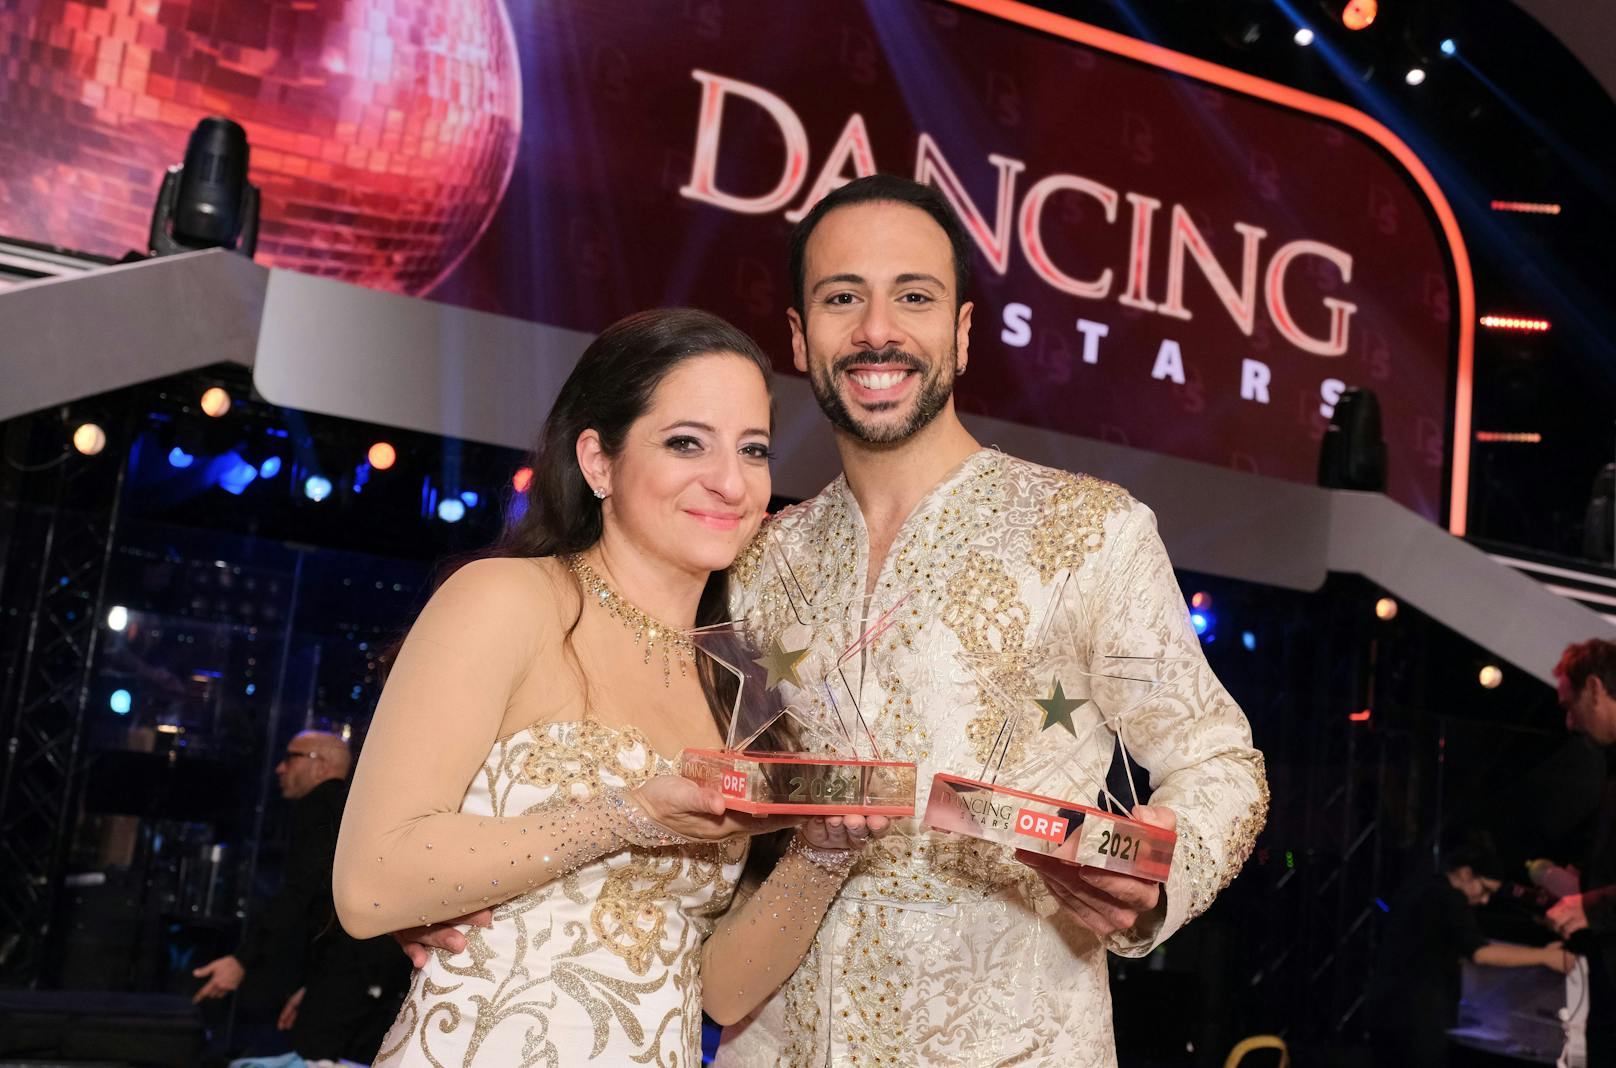 Caroline Athanasiadis und Danilo Campisi tanzten sich bei "Dancing Stars" zum Sieg.